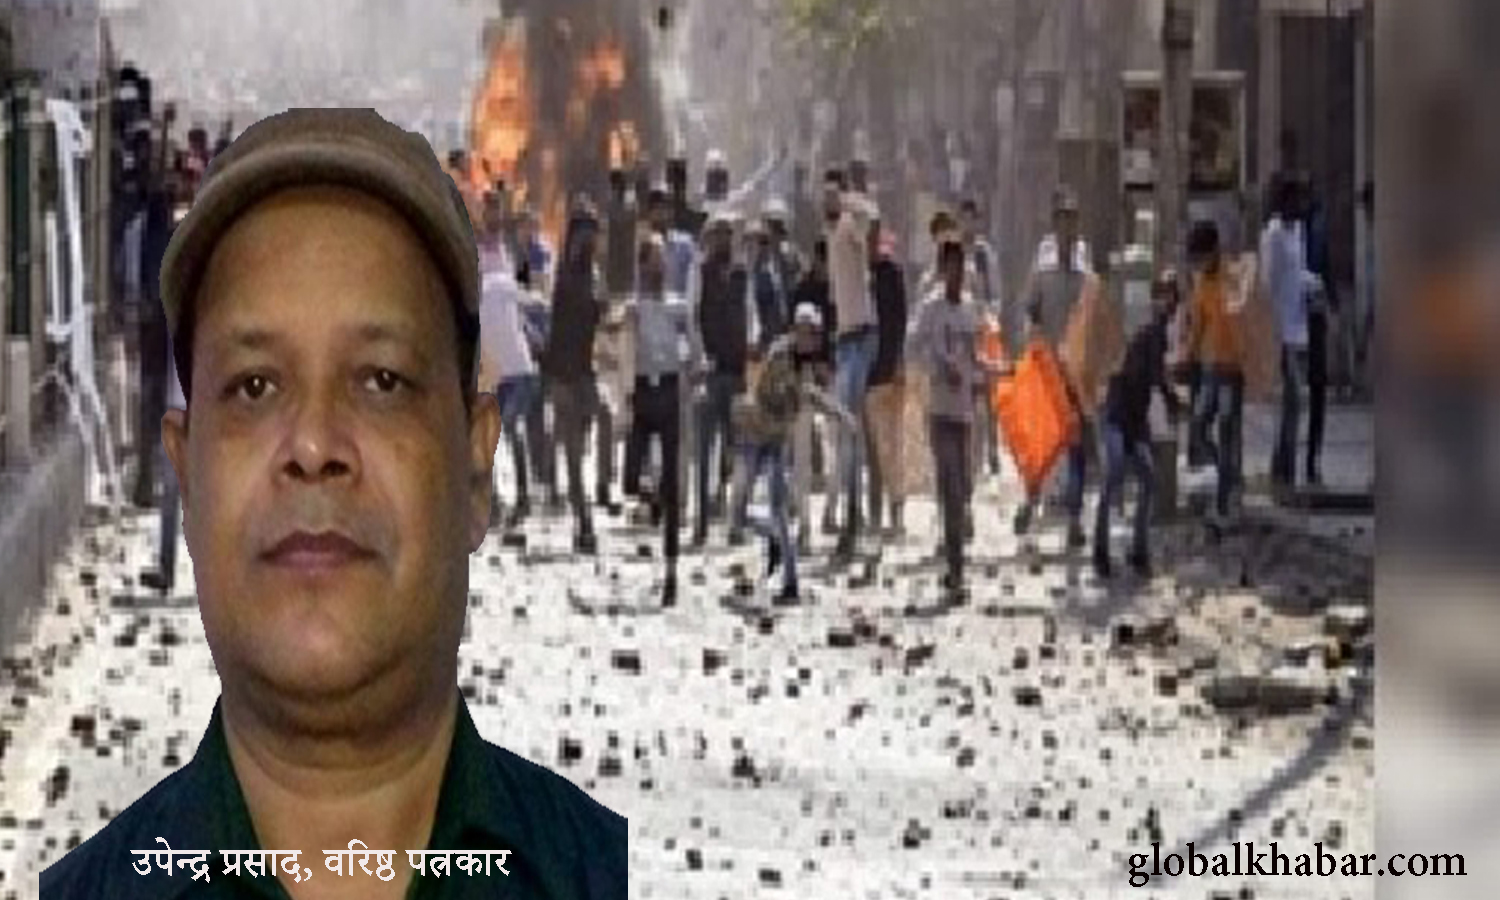 दिल्ली का दंगा एक सुनियोजित साजिश, वह कौन है जो देश को बदनाम करना चाह रहा है : वरिष्ठ पत्रकार उपेन्द्र प्रसाद